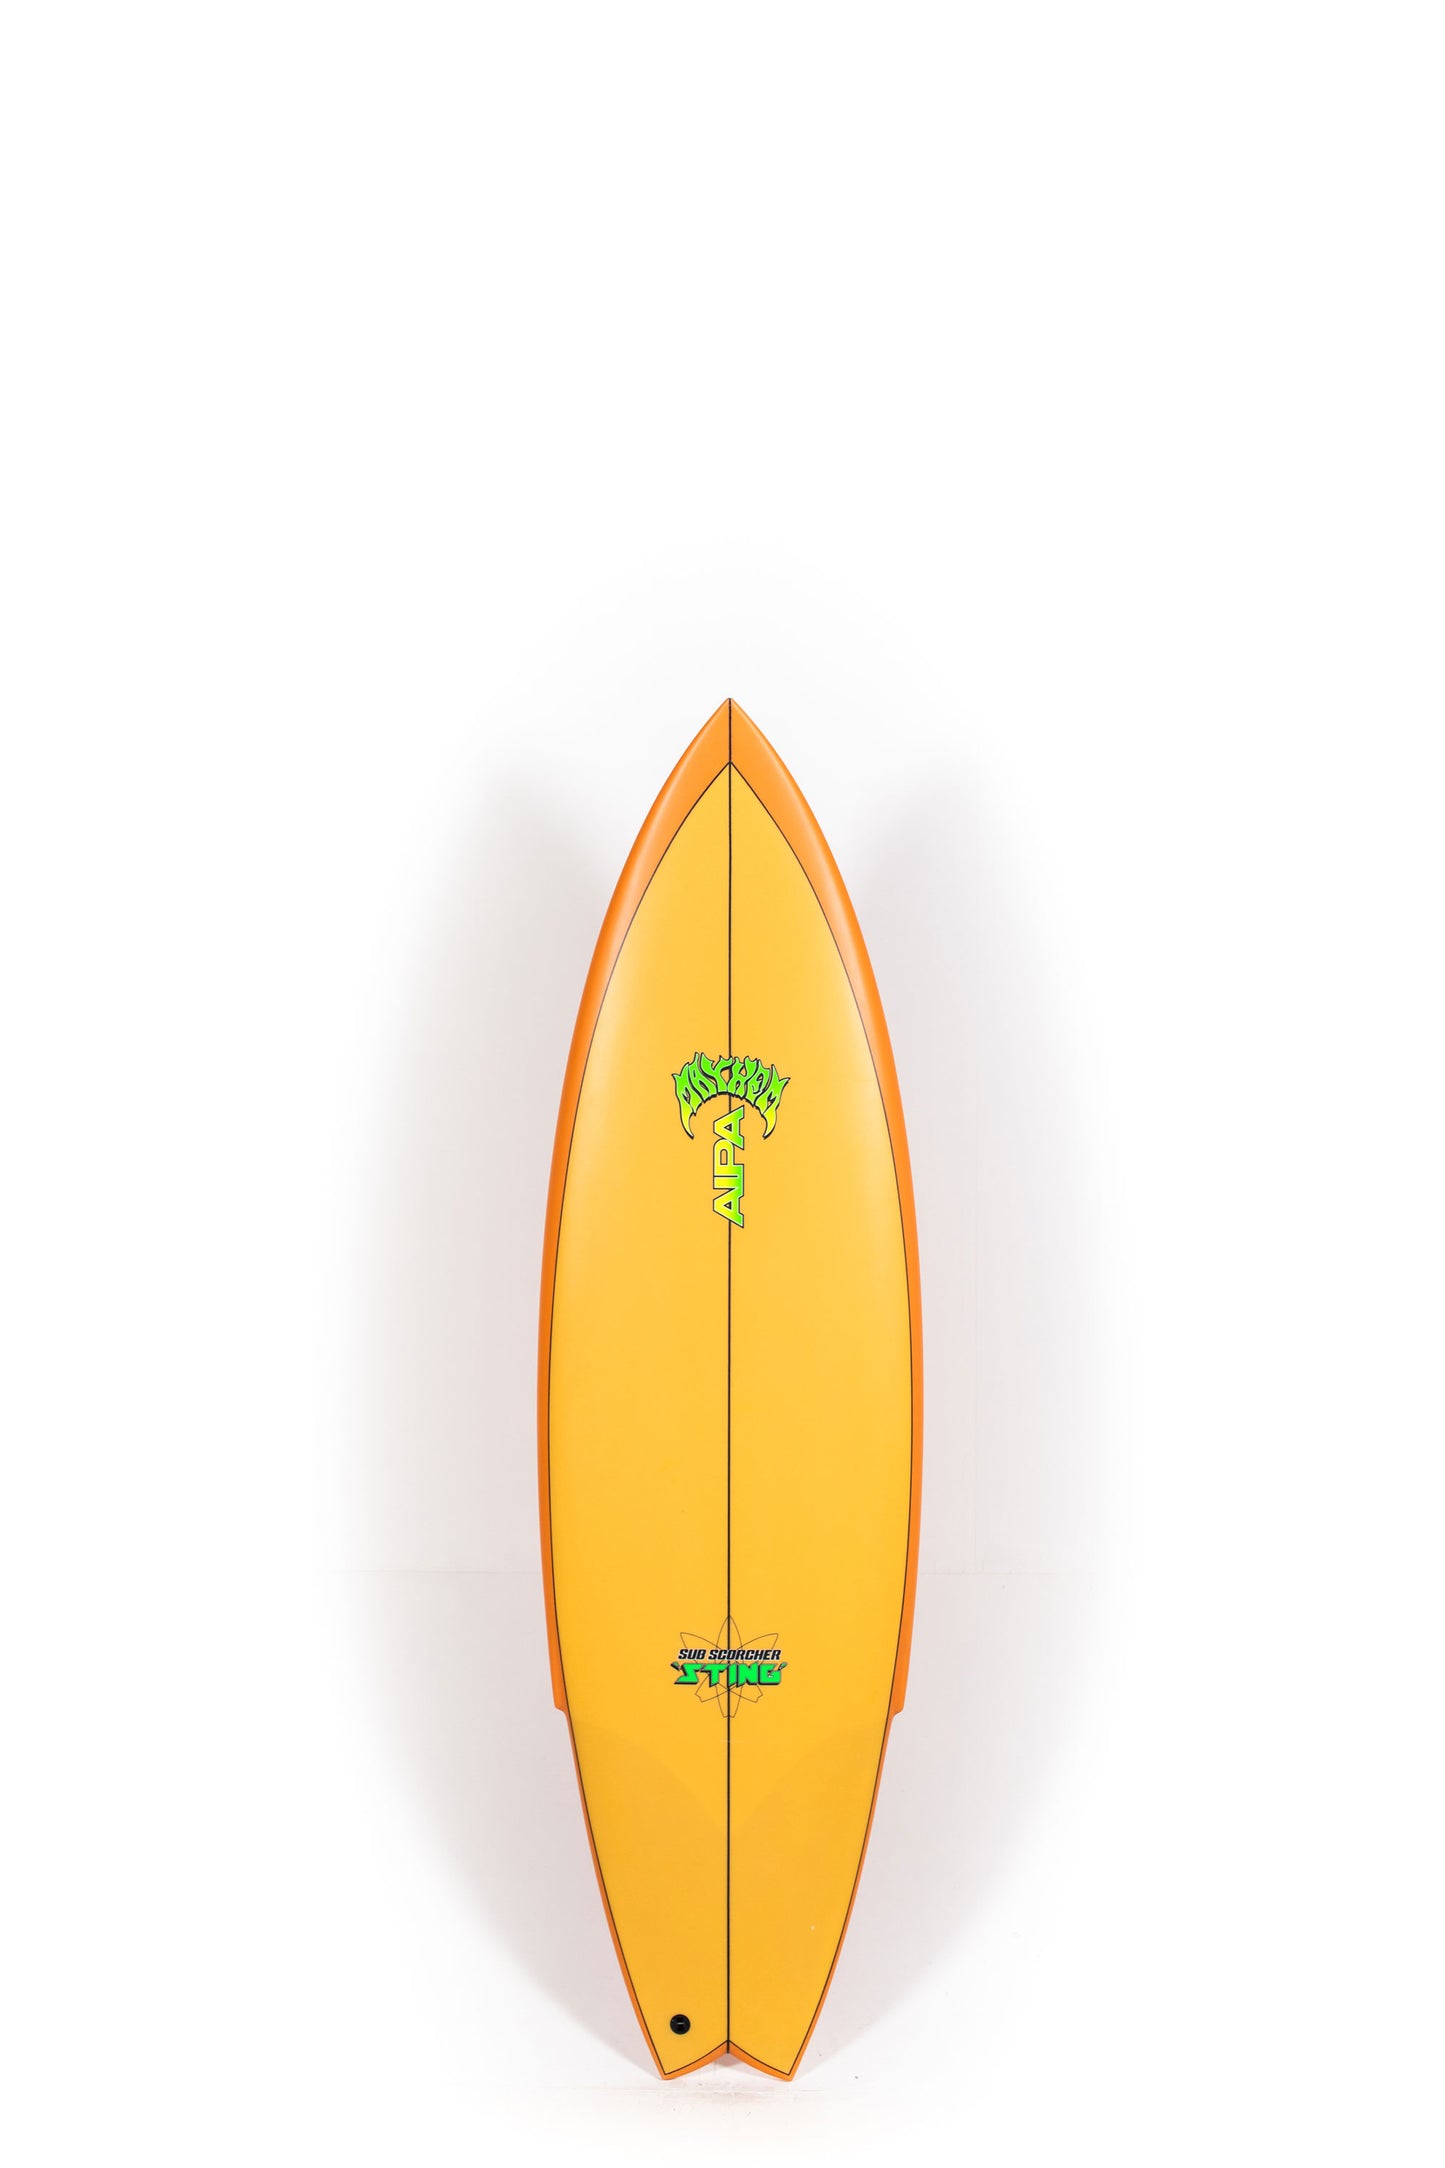 Pukas Surf Shop - Lost Surfboard - SUB SCORCHER STING by Mayhem x Brink - 5’10” x 20" x 2.55" - 31.5L - MA00038